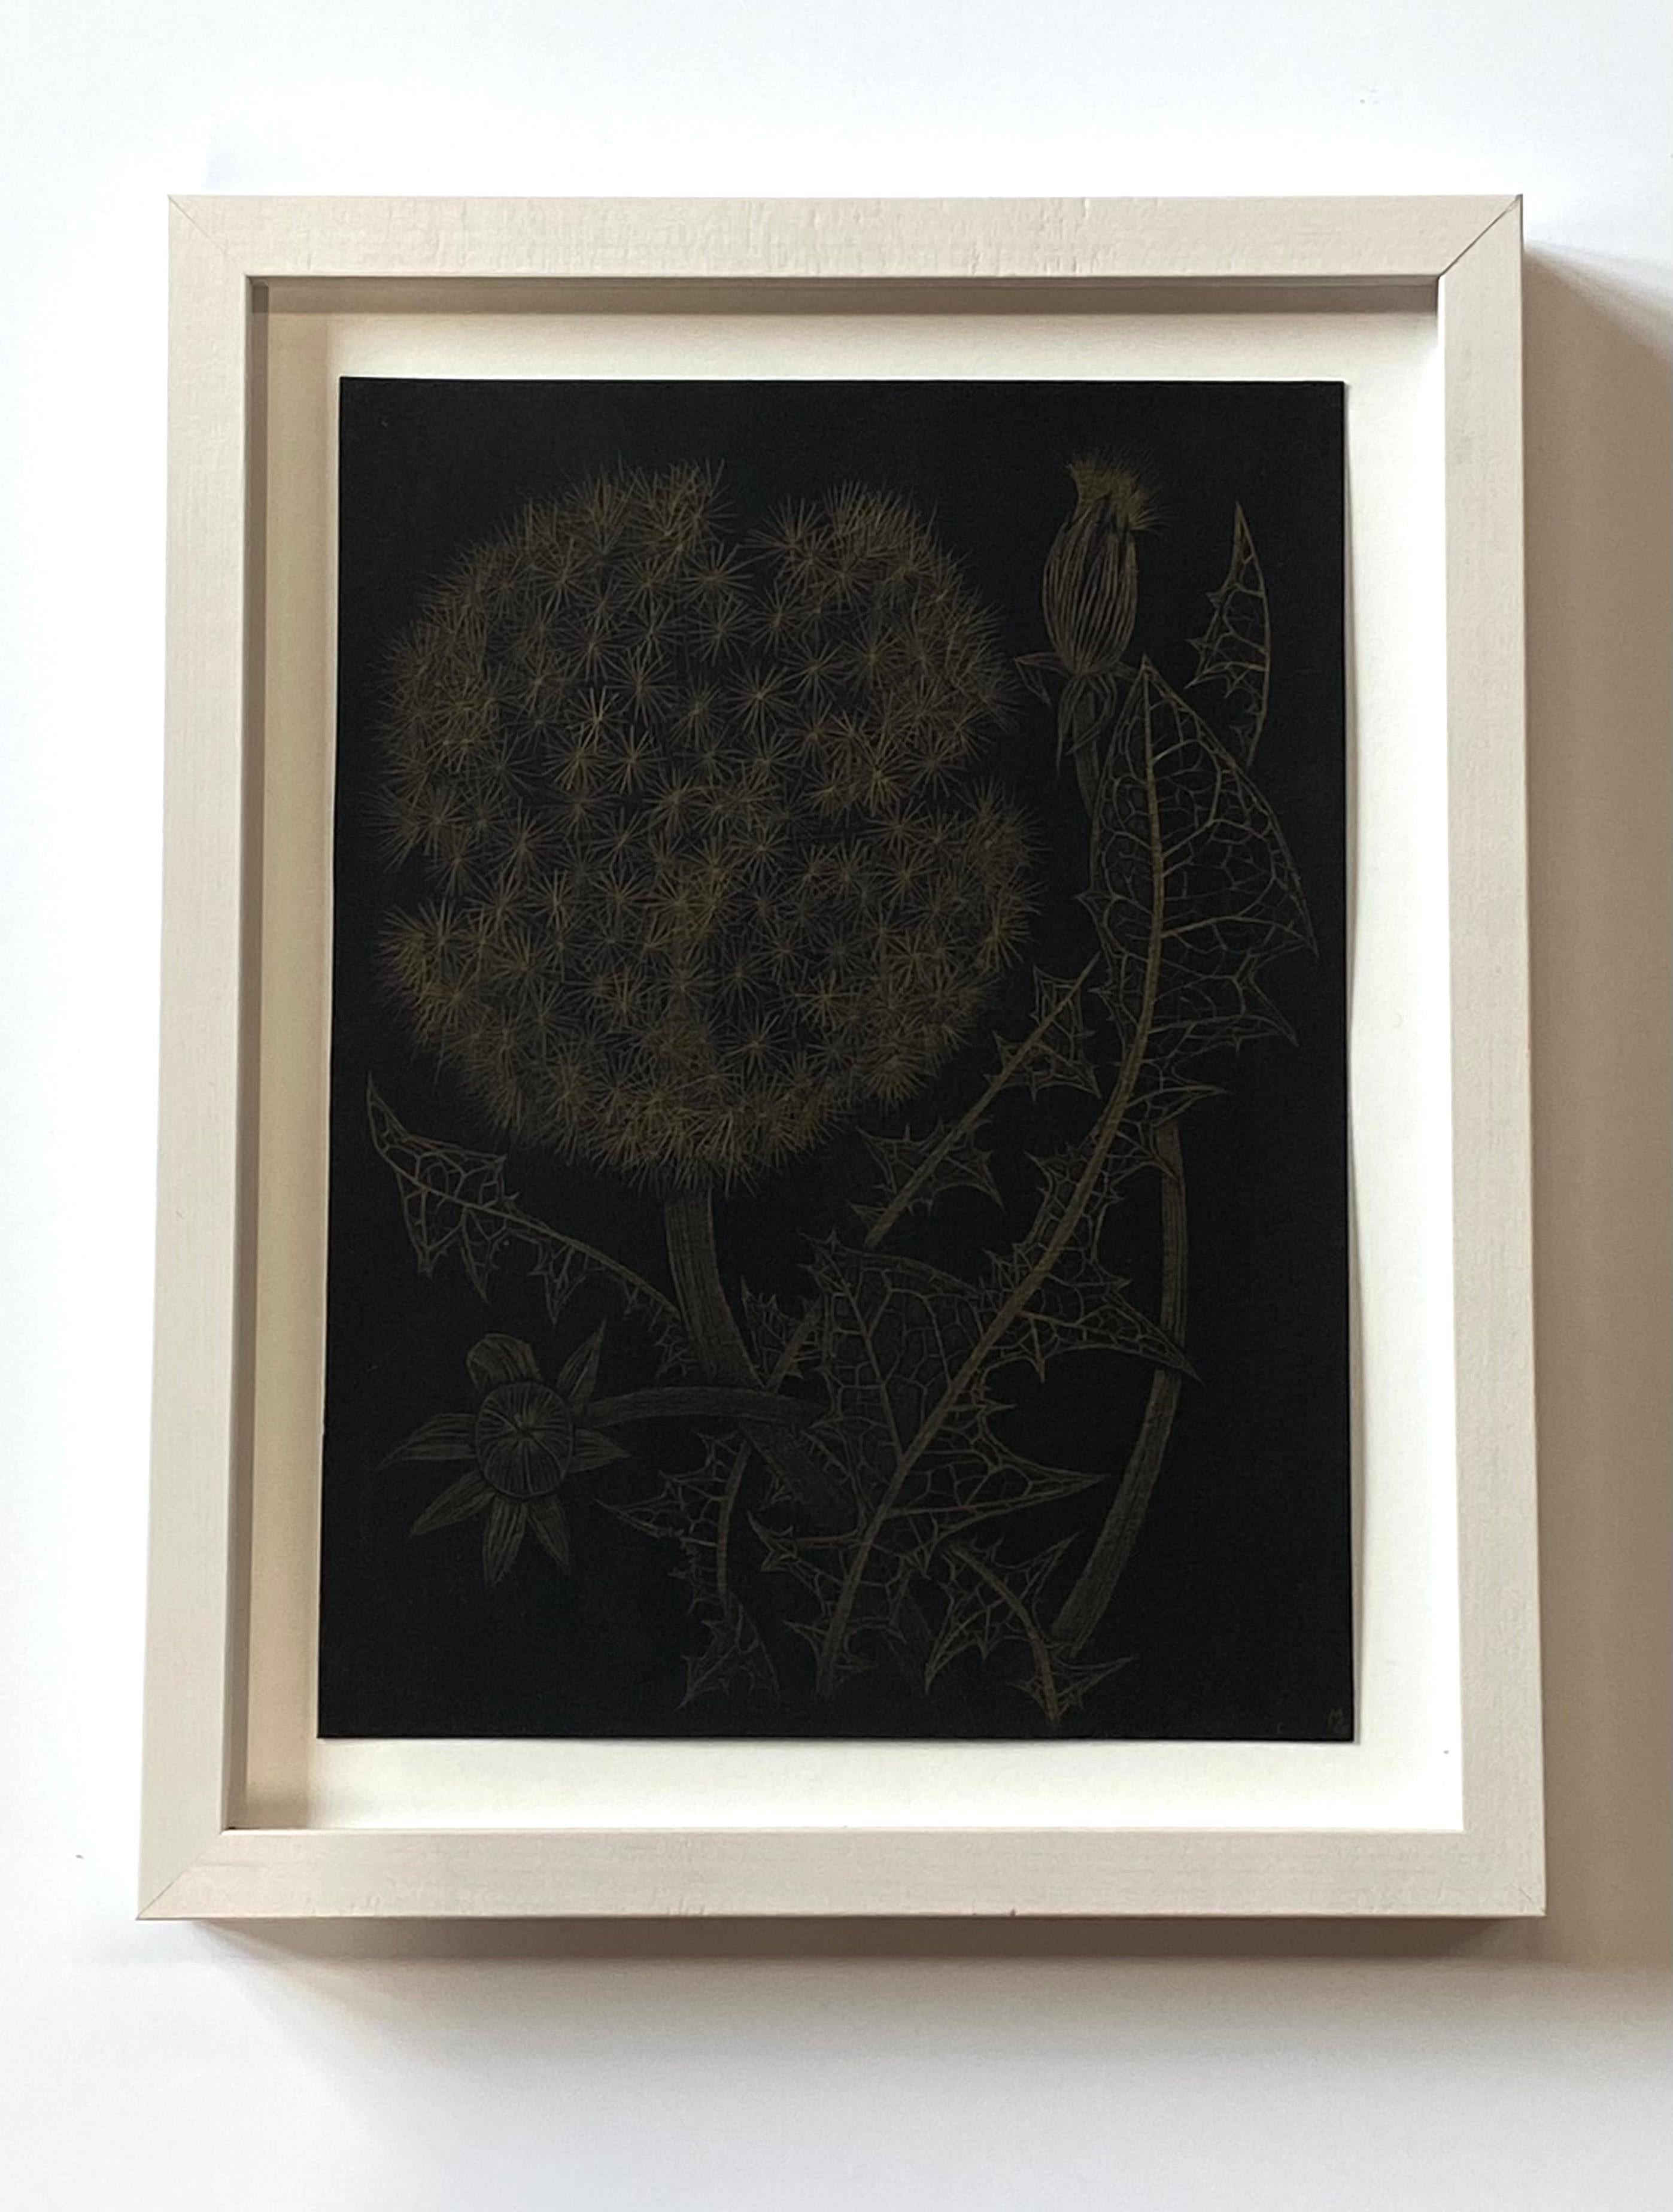 Dandelion mit zwei Knospen, botanische Zeichnung in Metallic-Gold, schwarzes Papier – Art von Margot Glass